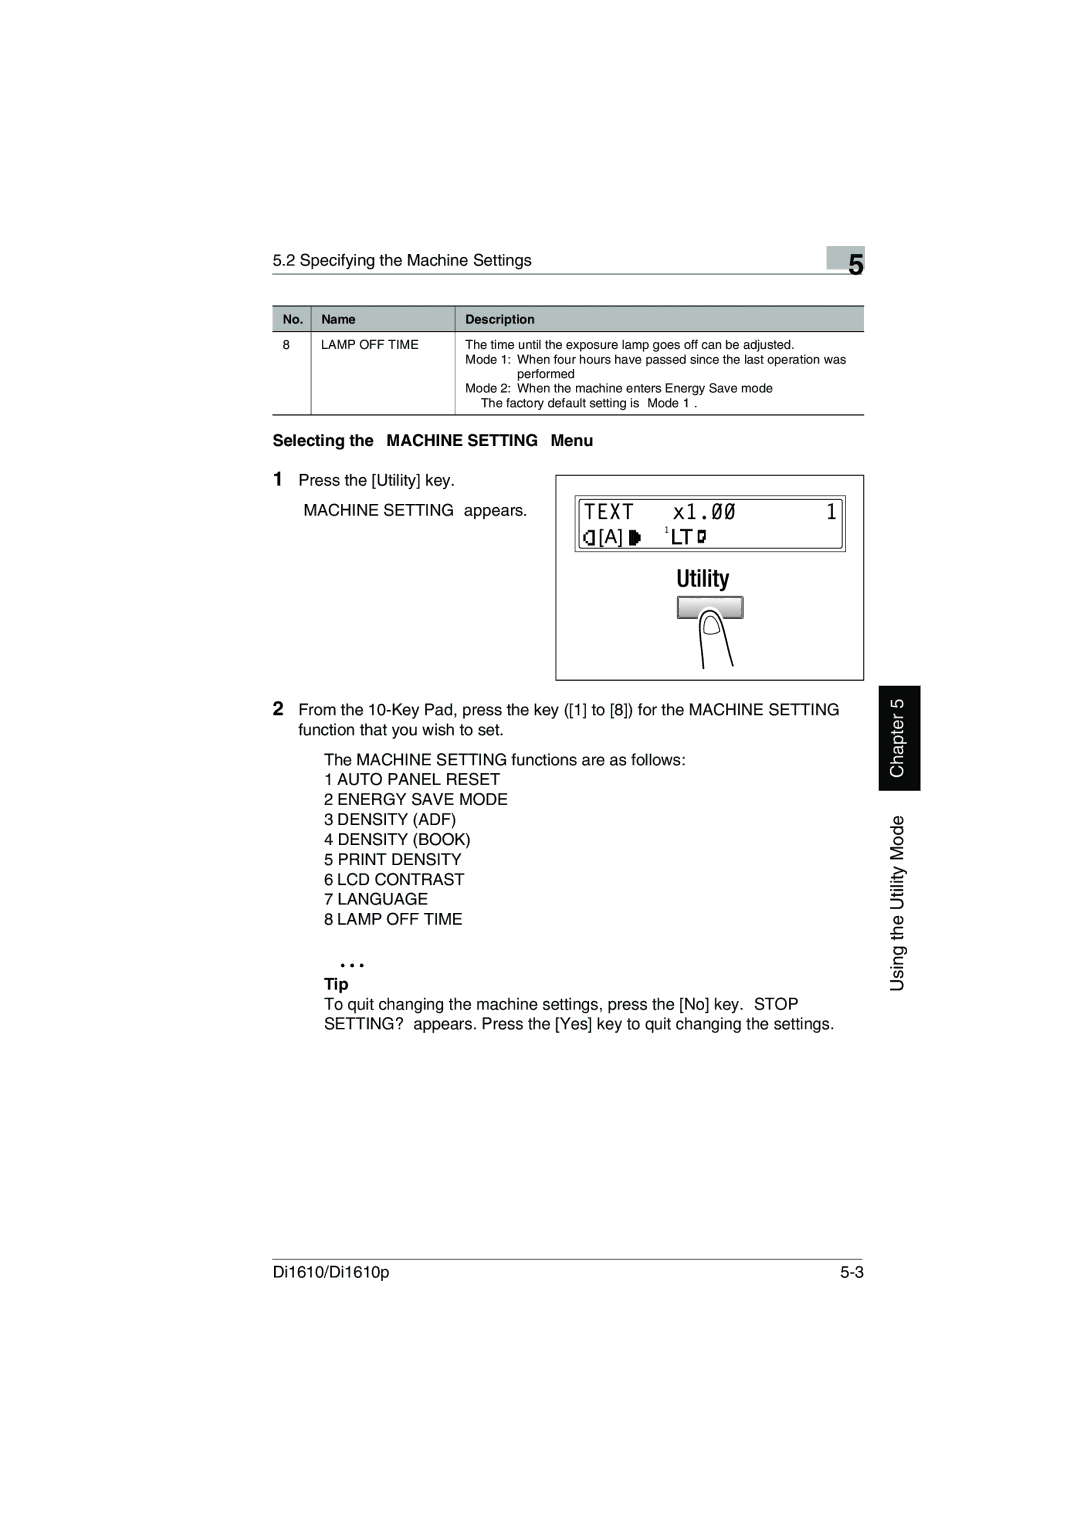 Konica Minolta Di1610p user manual Specifying the Machine Settings, Selecting the Machine Setting Menu 